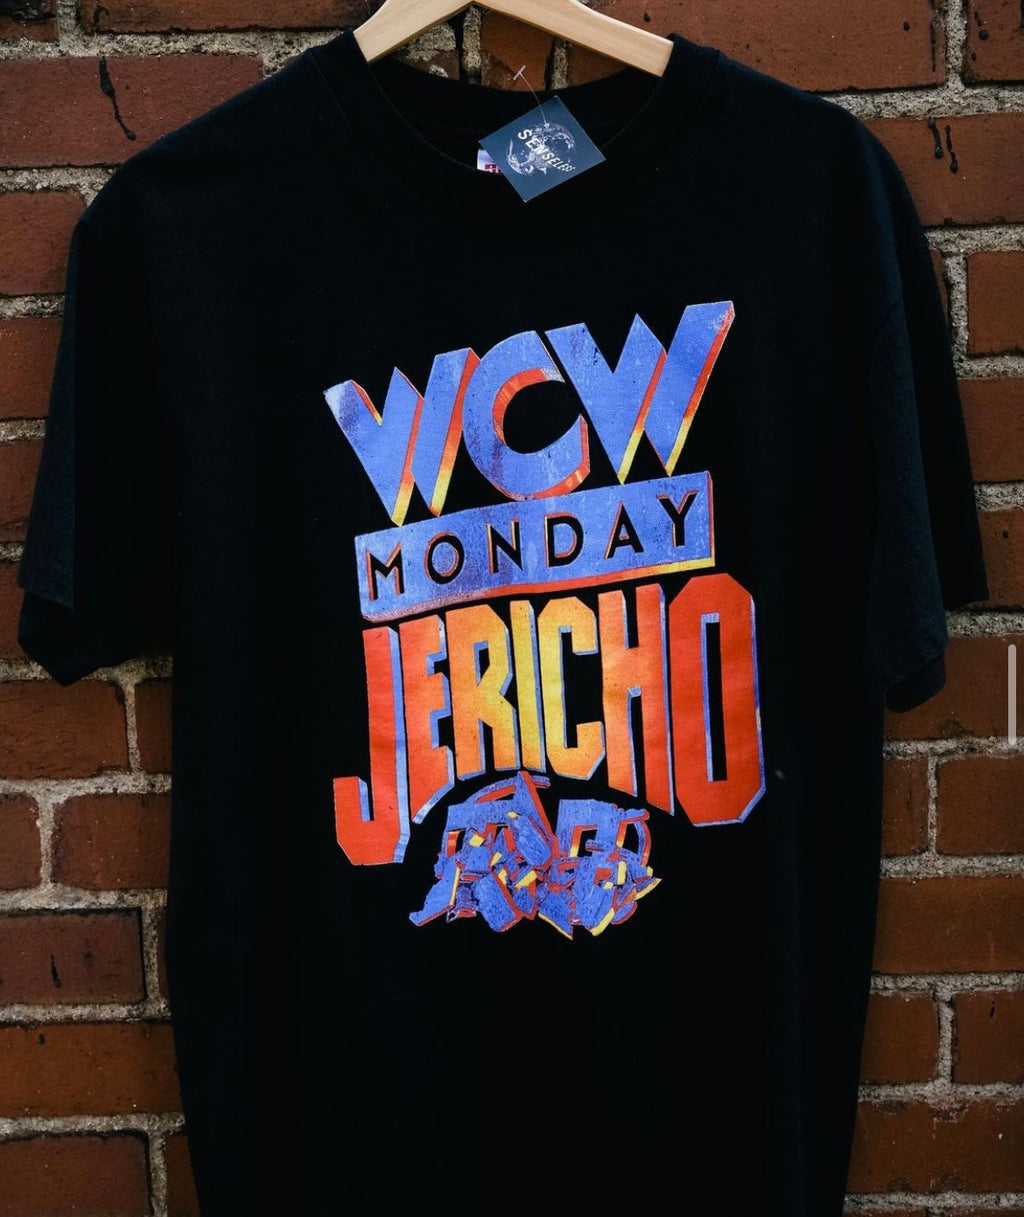 WCW Chris Jericho Tee